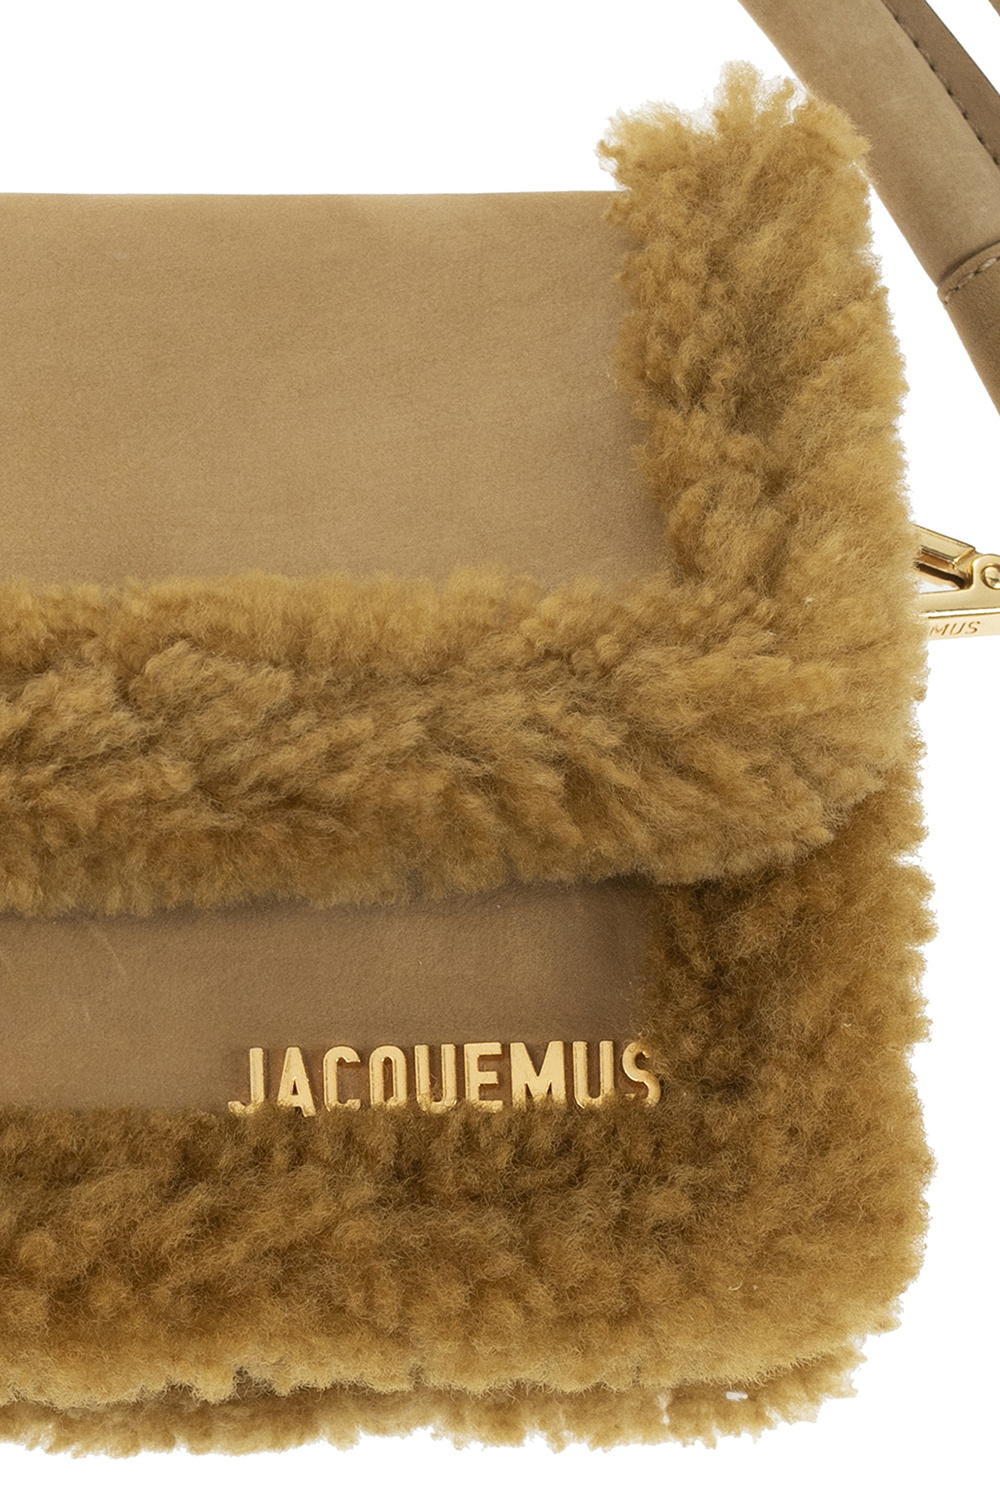 Jacquemus ‘Le Rond’ shoulder bag